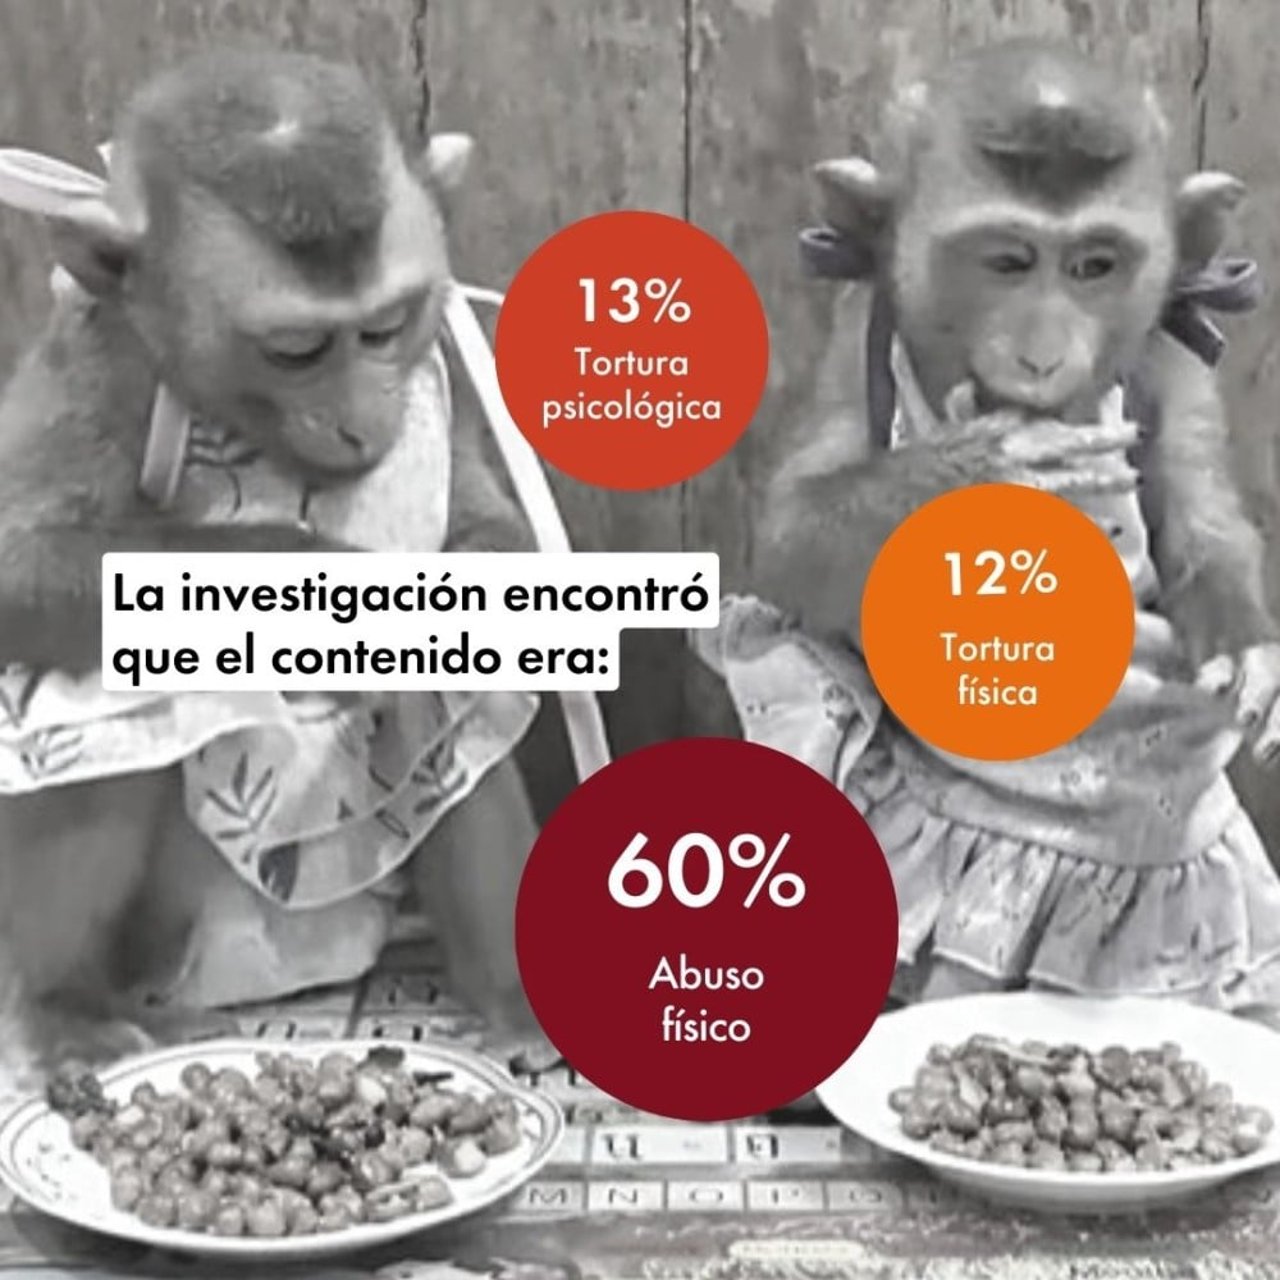 Gráfico sobre la clasificación del contenido con crueldad hacia los macacos en redes sociales